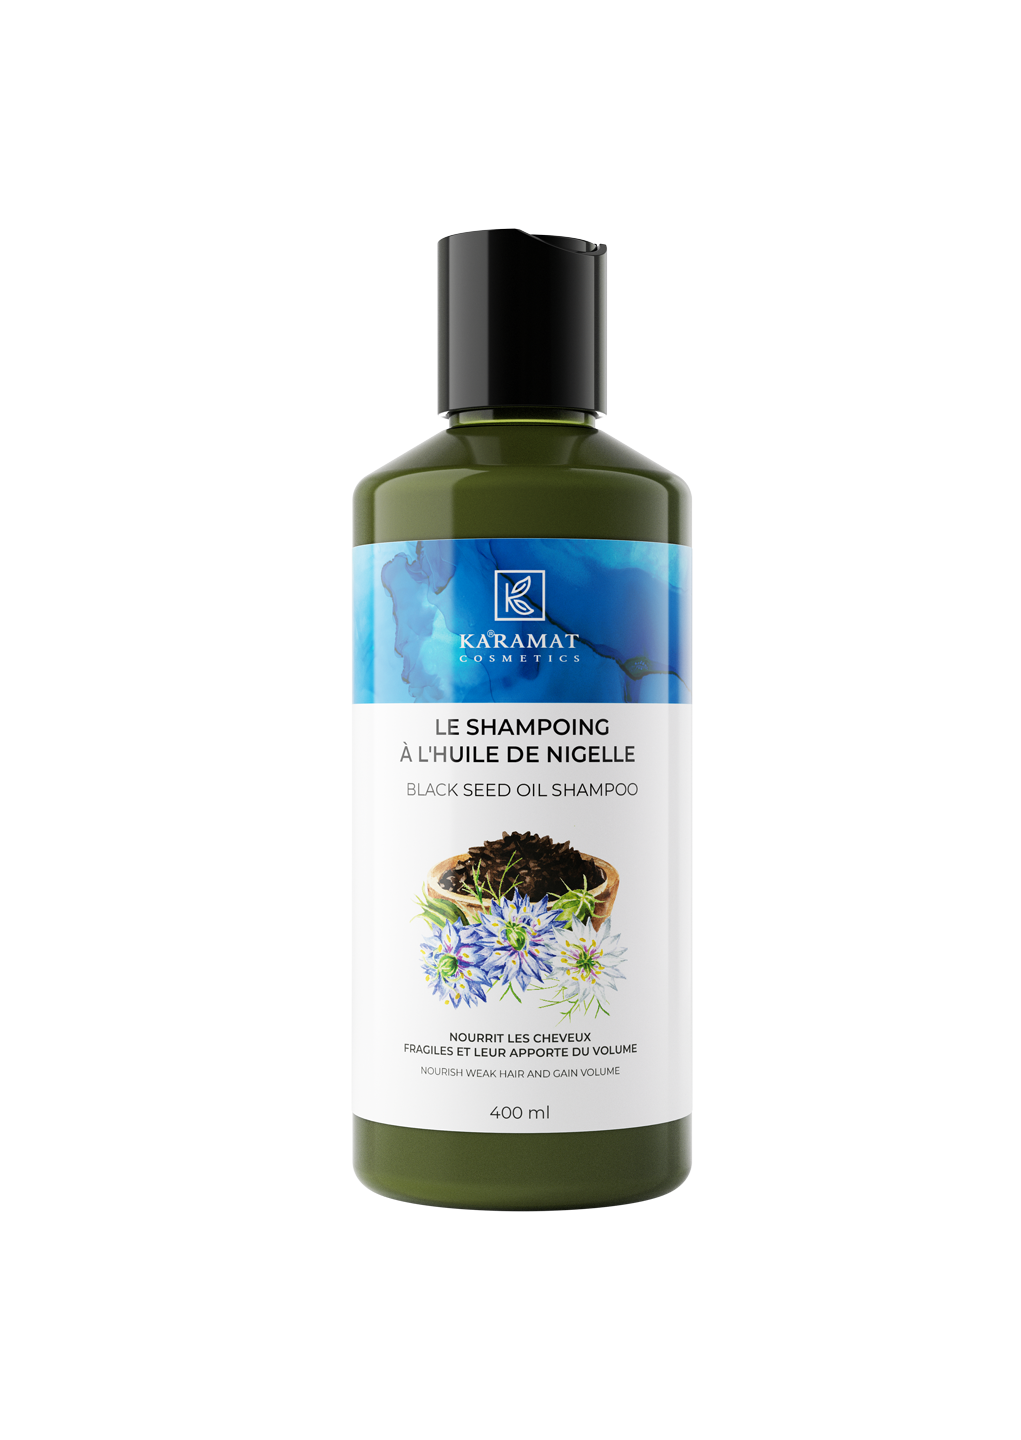 shampooing-a-l-huile-de-nigelle-karamat-cosmetics-400-ml-nourrit-les-cheveux-affaiblis-et-apporte-du-volume